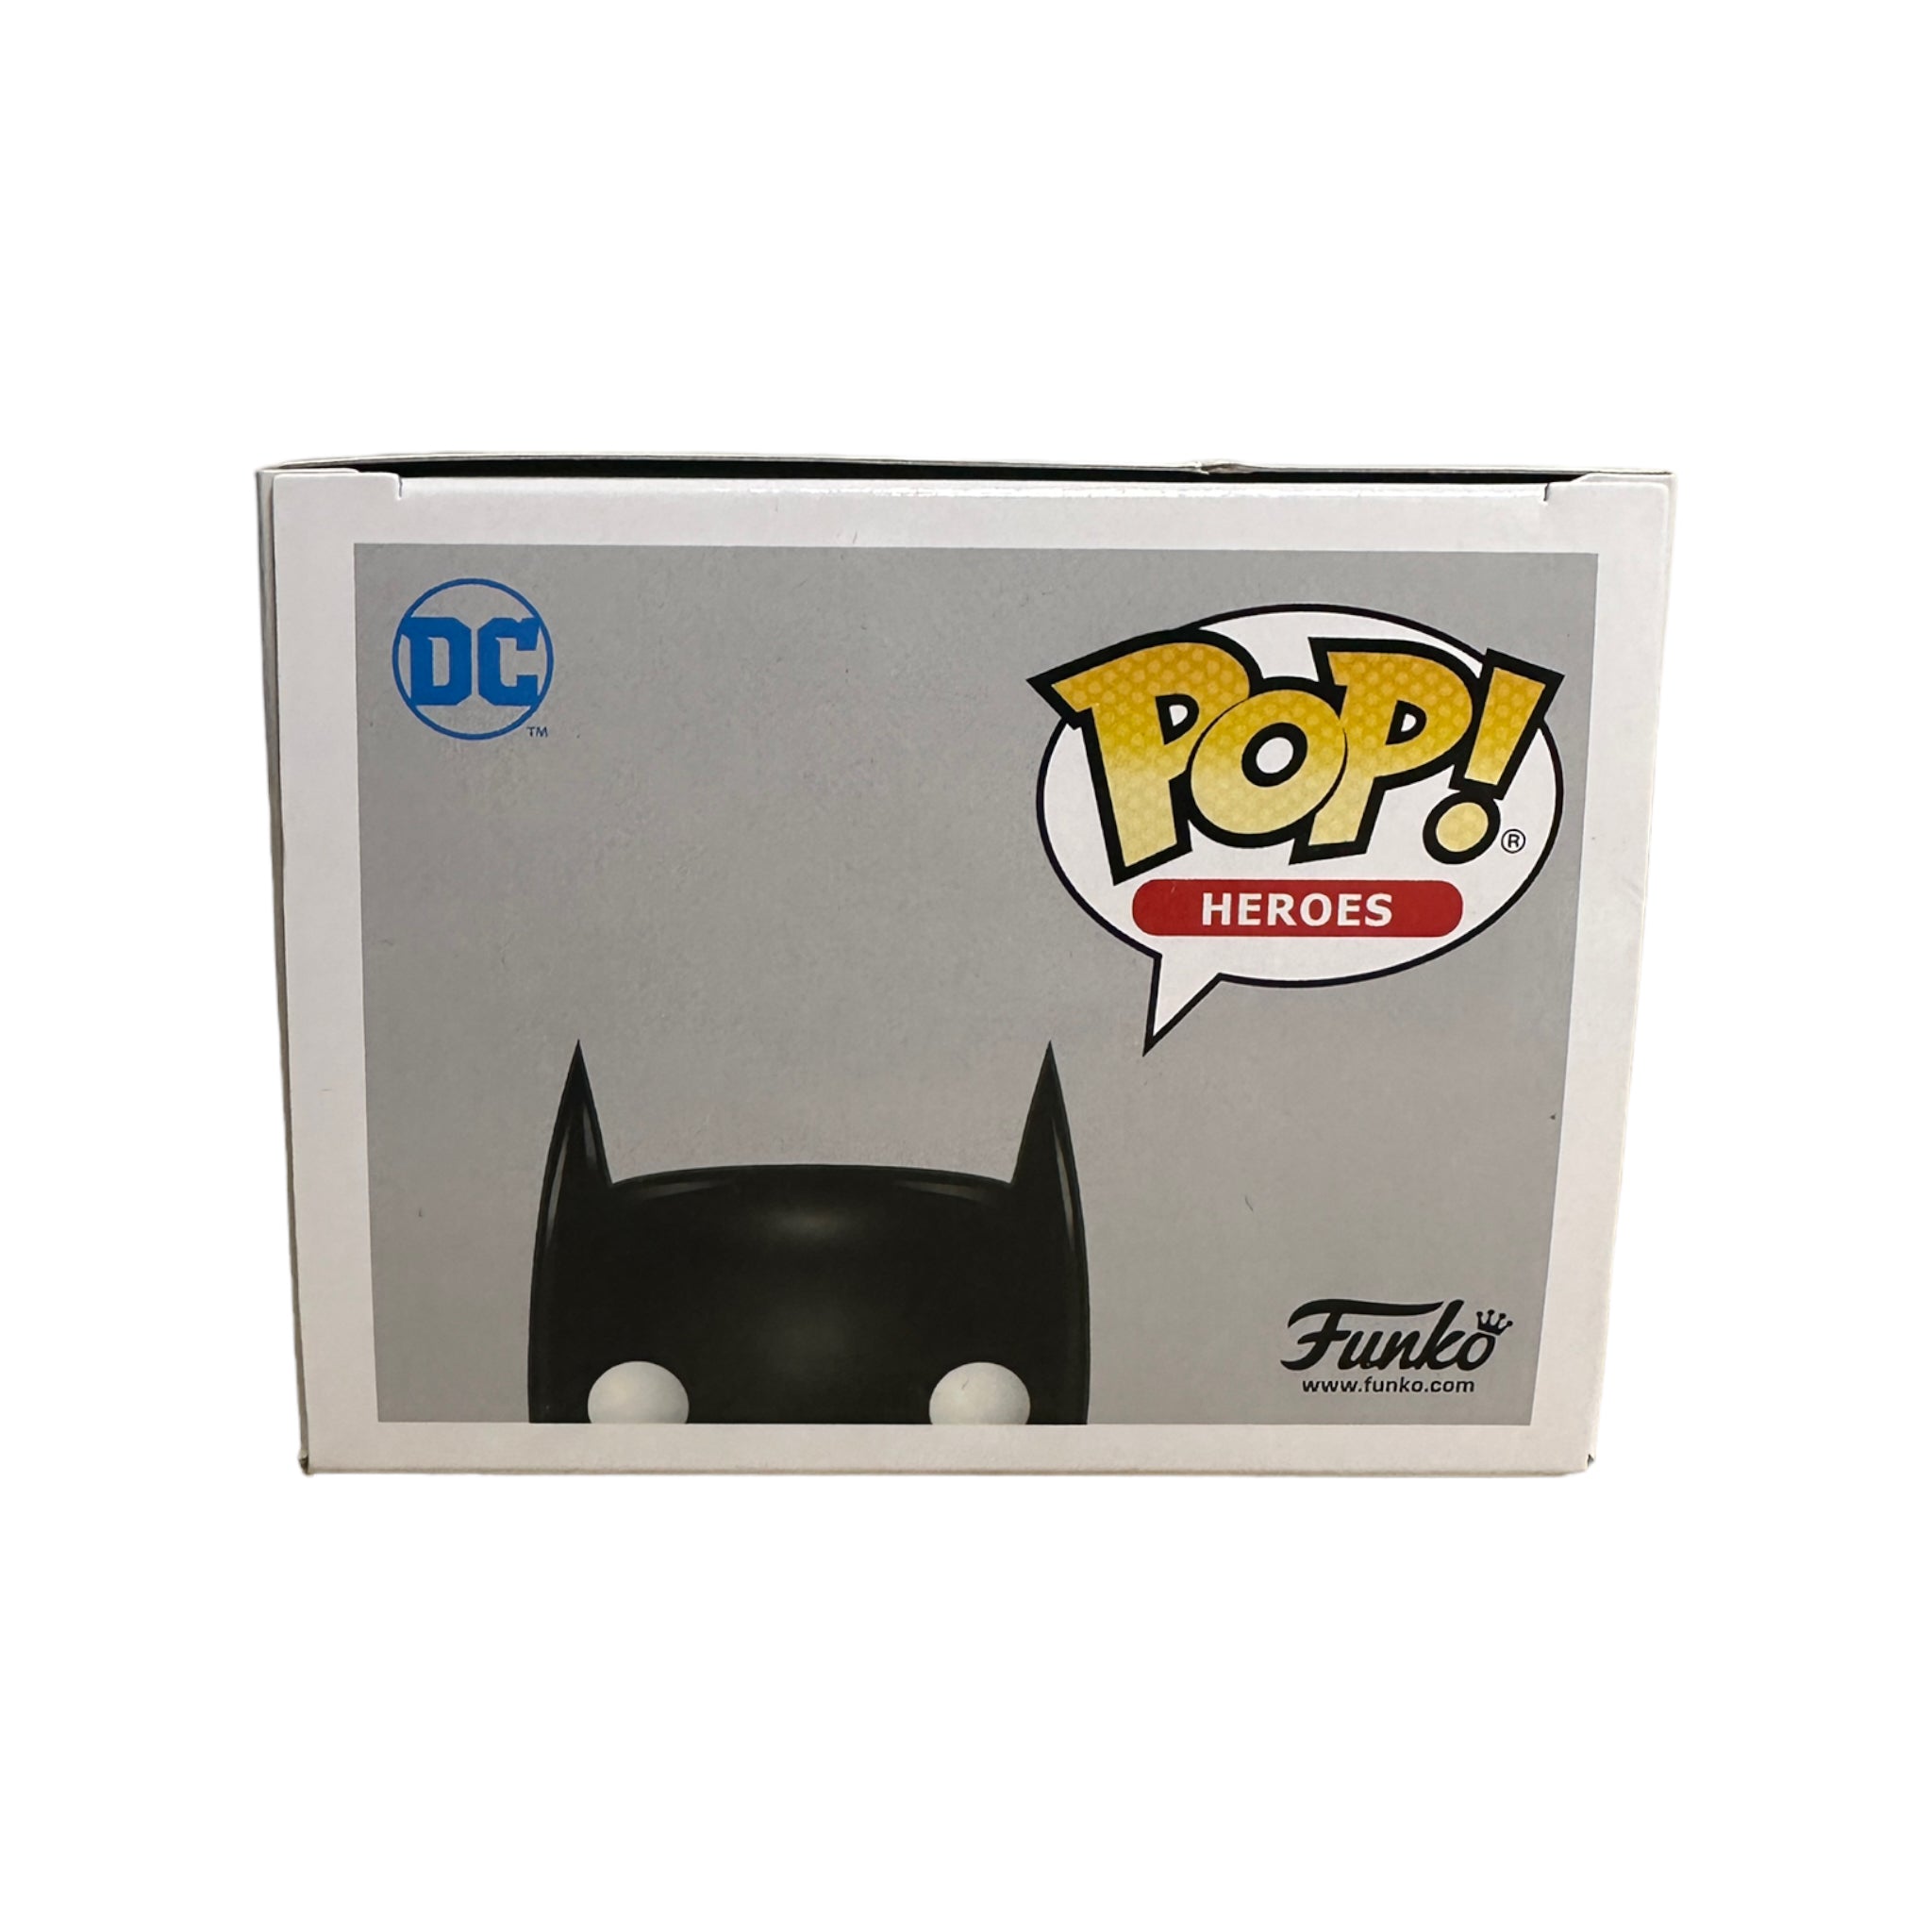 Batman #144 (Green Chrome) Funko Pop! - DC Super Heroes - ECCC 2018 Official Convention Exclusive LE1500 Pcs - Condition 8.5/10